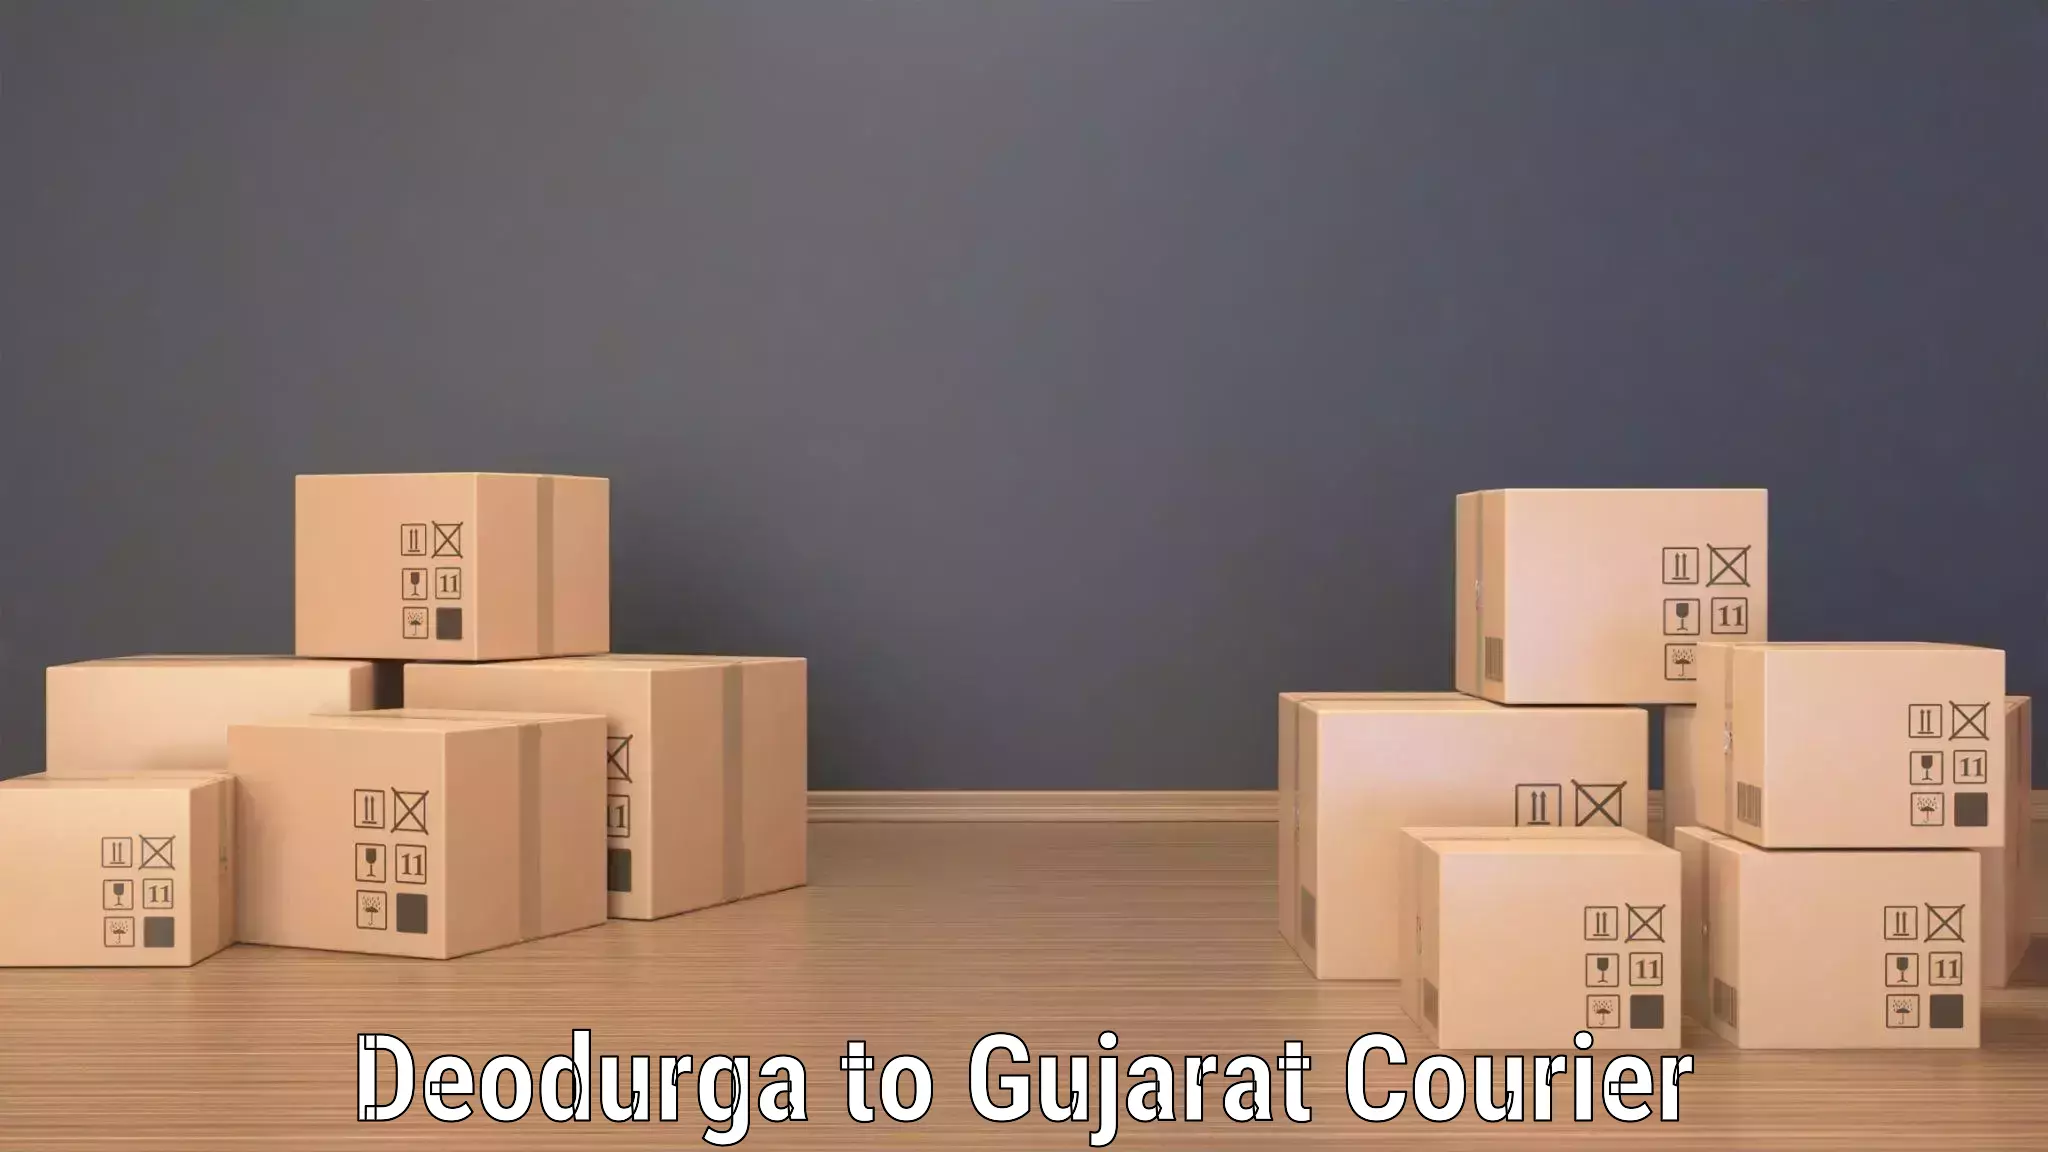 High-capacity courier solutions Deodurga to Vadodara